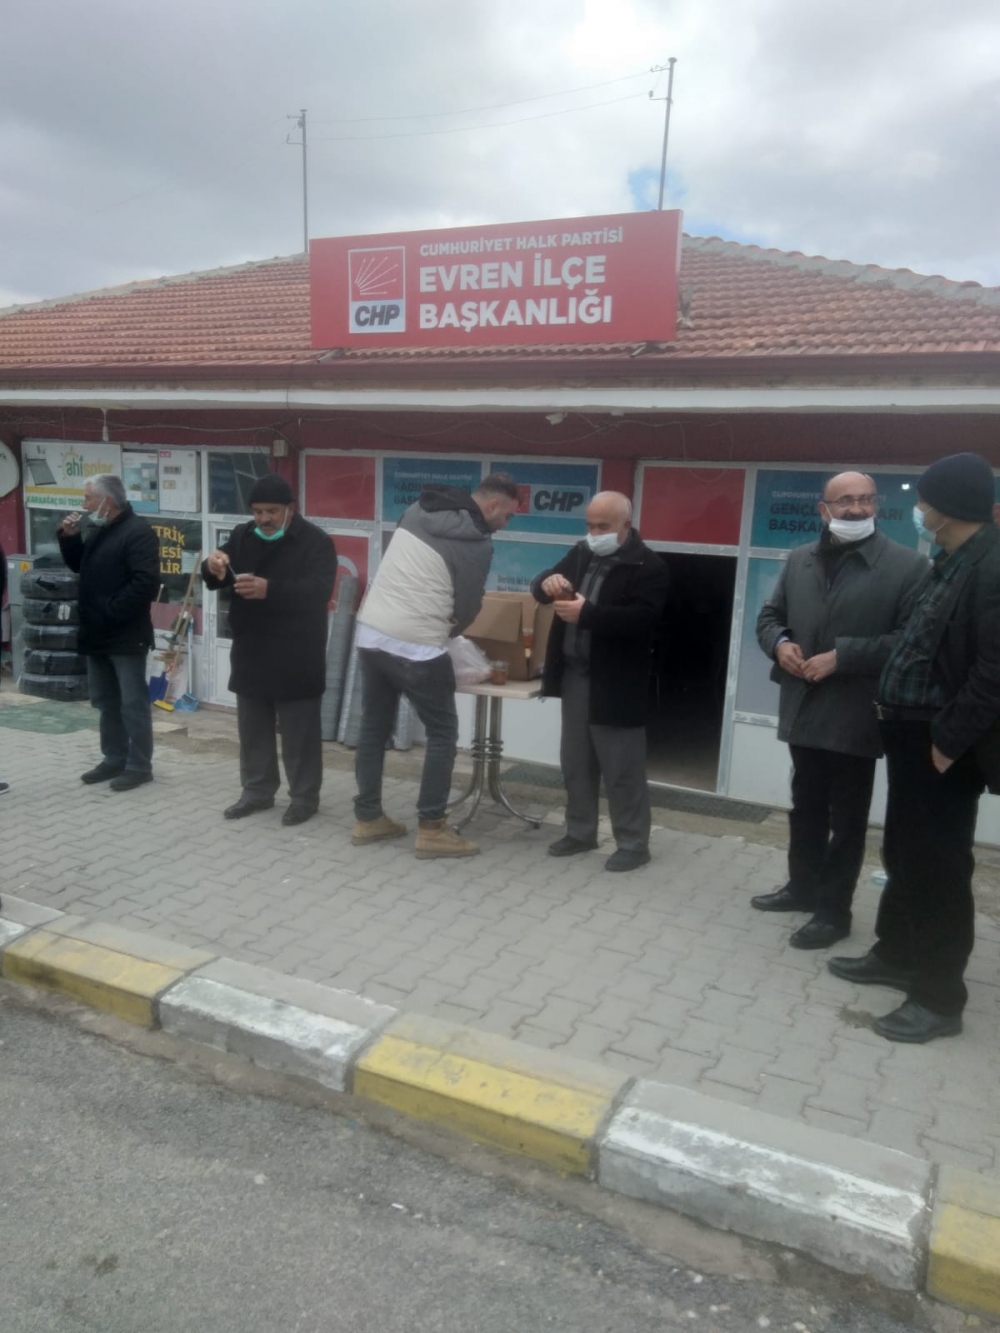 CHP Ankara’da halka Çanakkale Savaşı menüsü dağıtımı yaptı 17